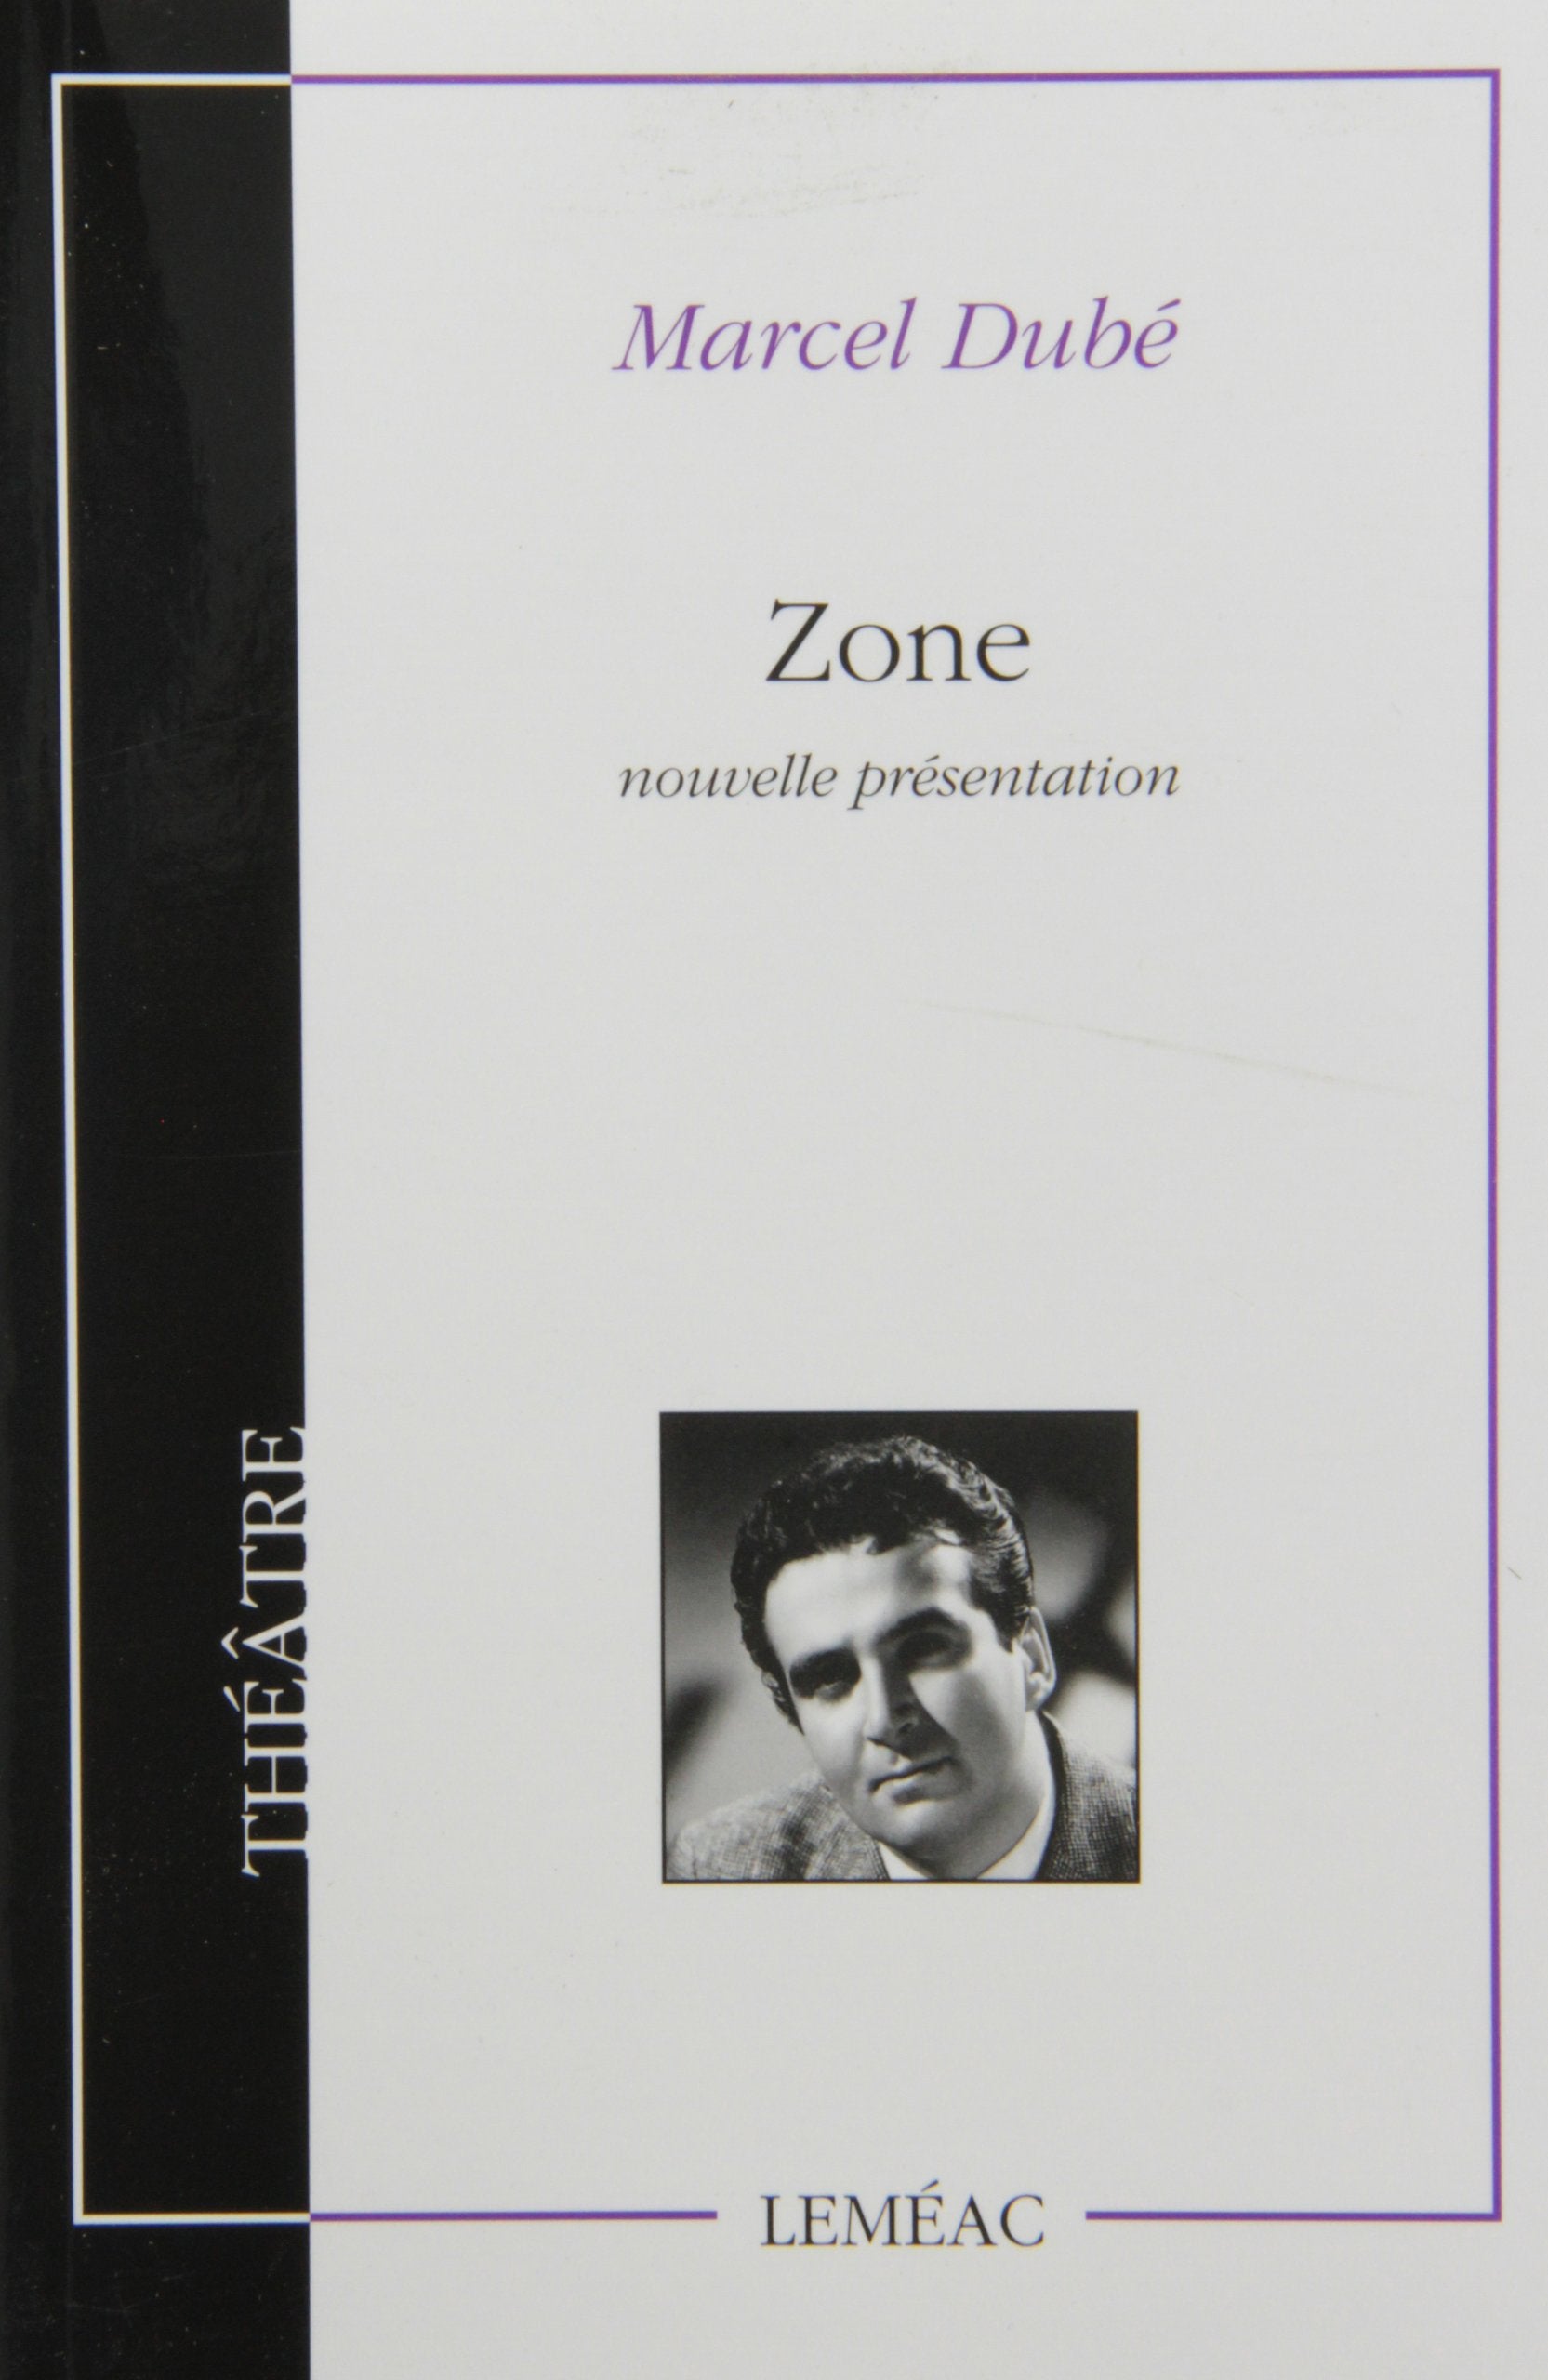 Livre ISBN 2760904385 Zone (Marcel Dubé)